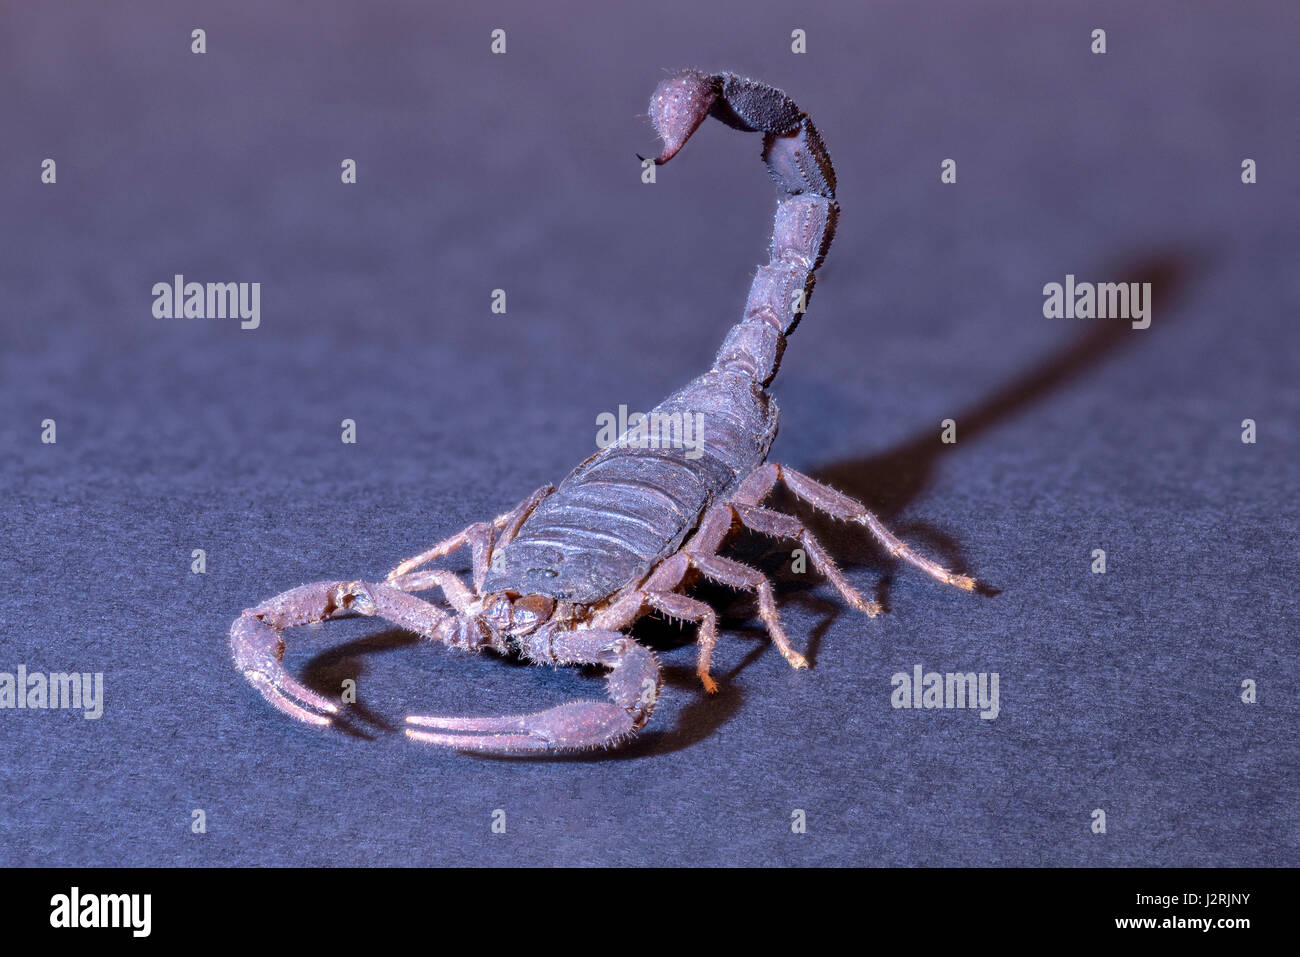 Madagascar Scorpion (Grosphus ankarana) campione, stinger tail pronti a colpire, spot illuminato e isolata contro di sfondo per studio. Foto Stock